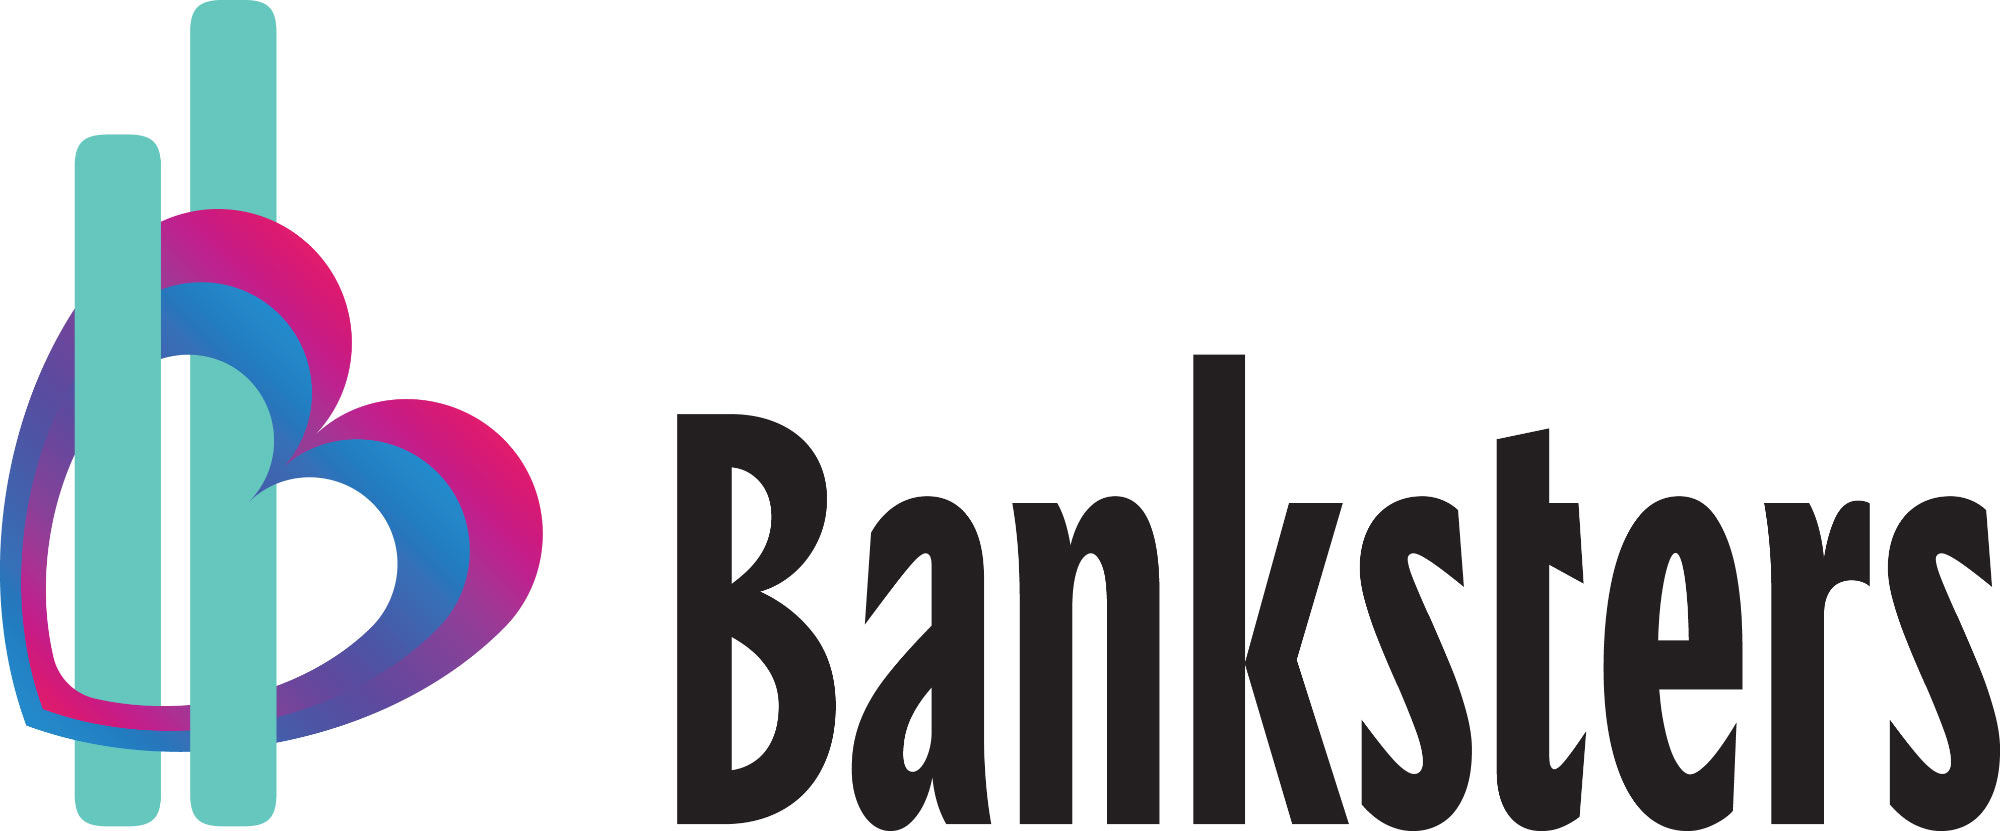 banksters logo